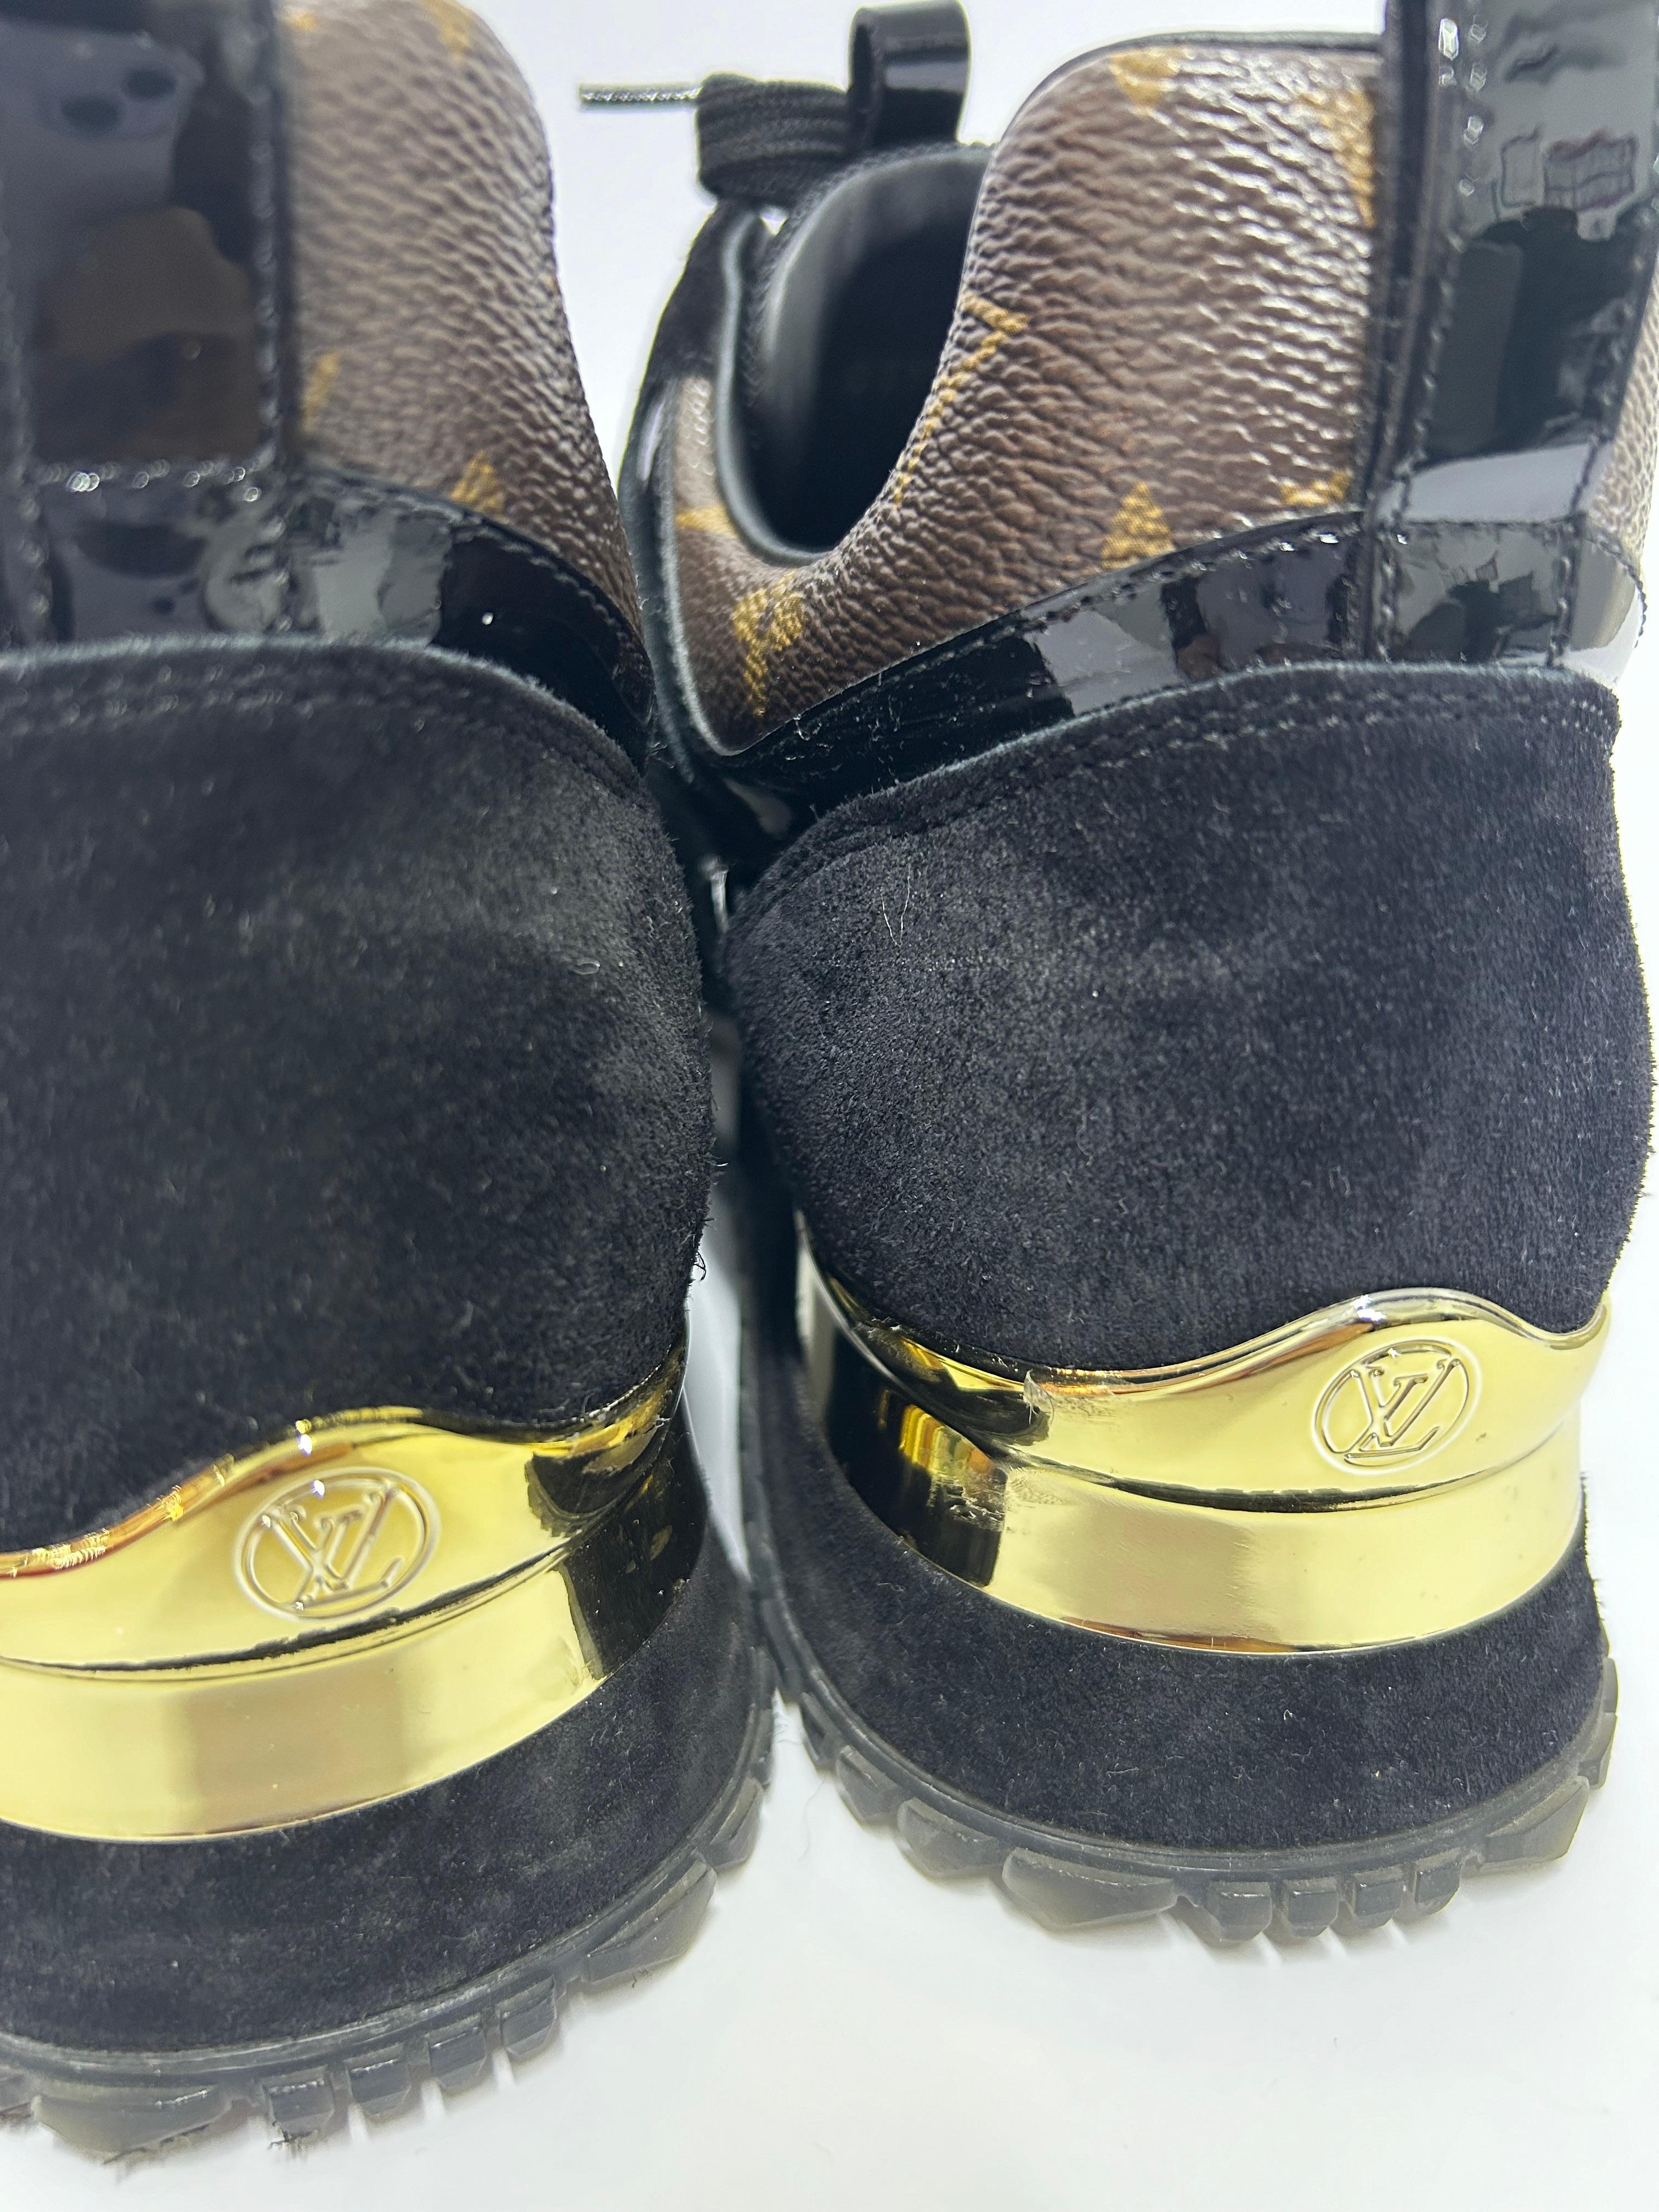 Louis Vuitton Run Away Sneakers Size EU 39 8